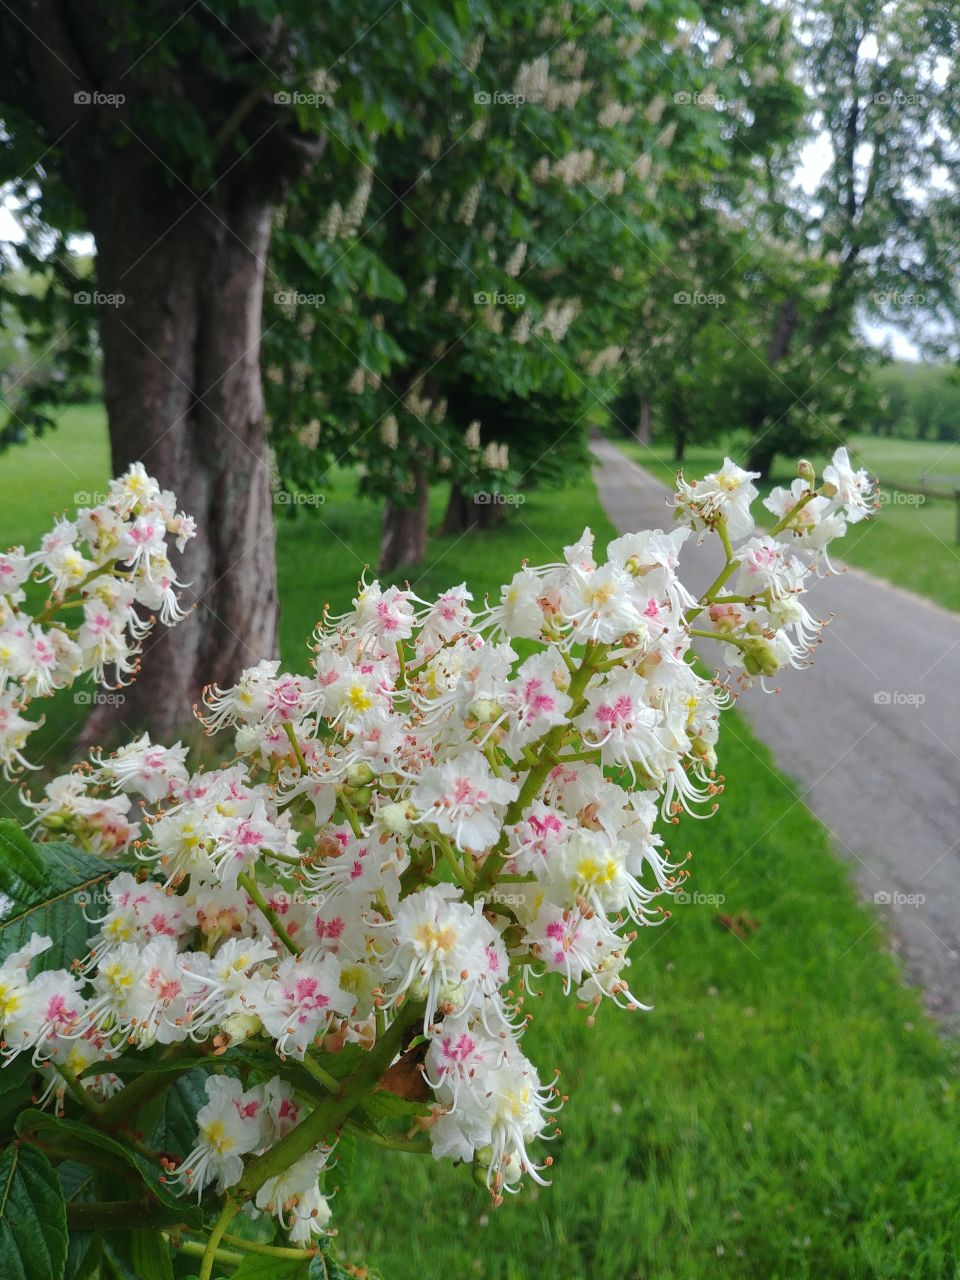 Kastanien kastanienbaum baum blühen Blüten weiss rosa gelb Frühling grün wandern spazieren Ausflug